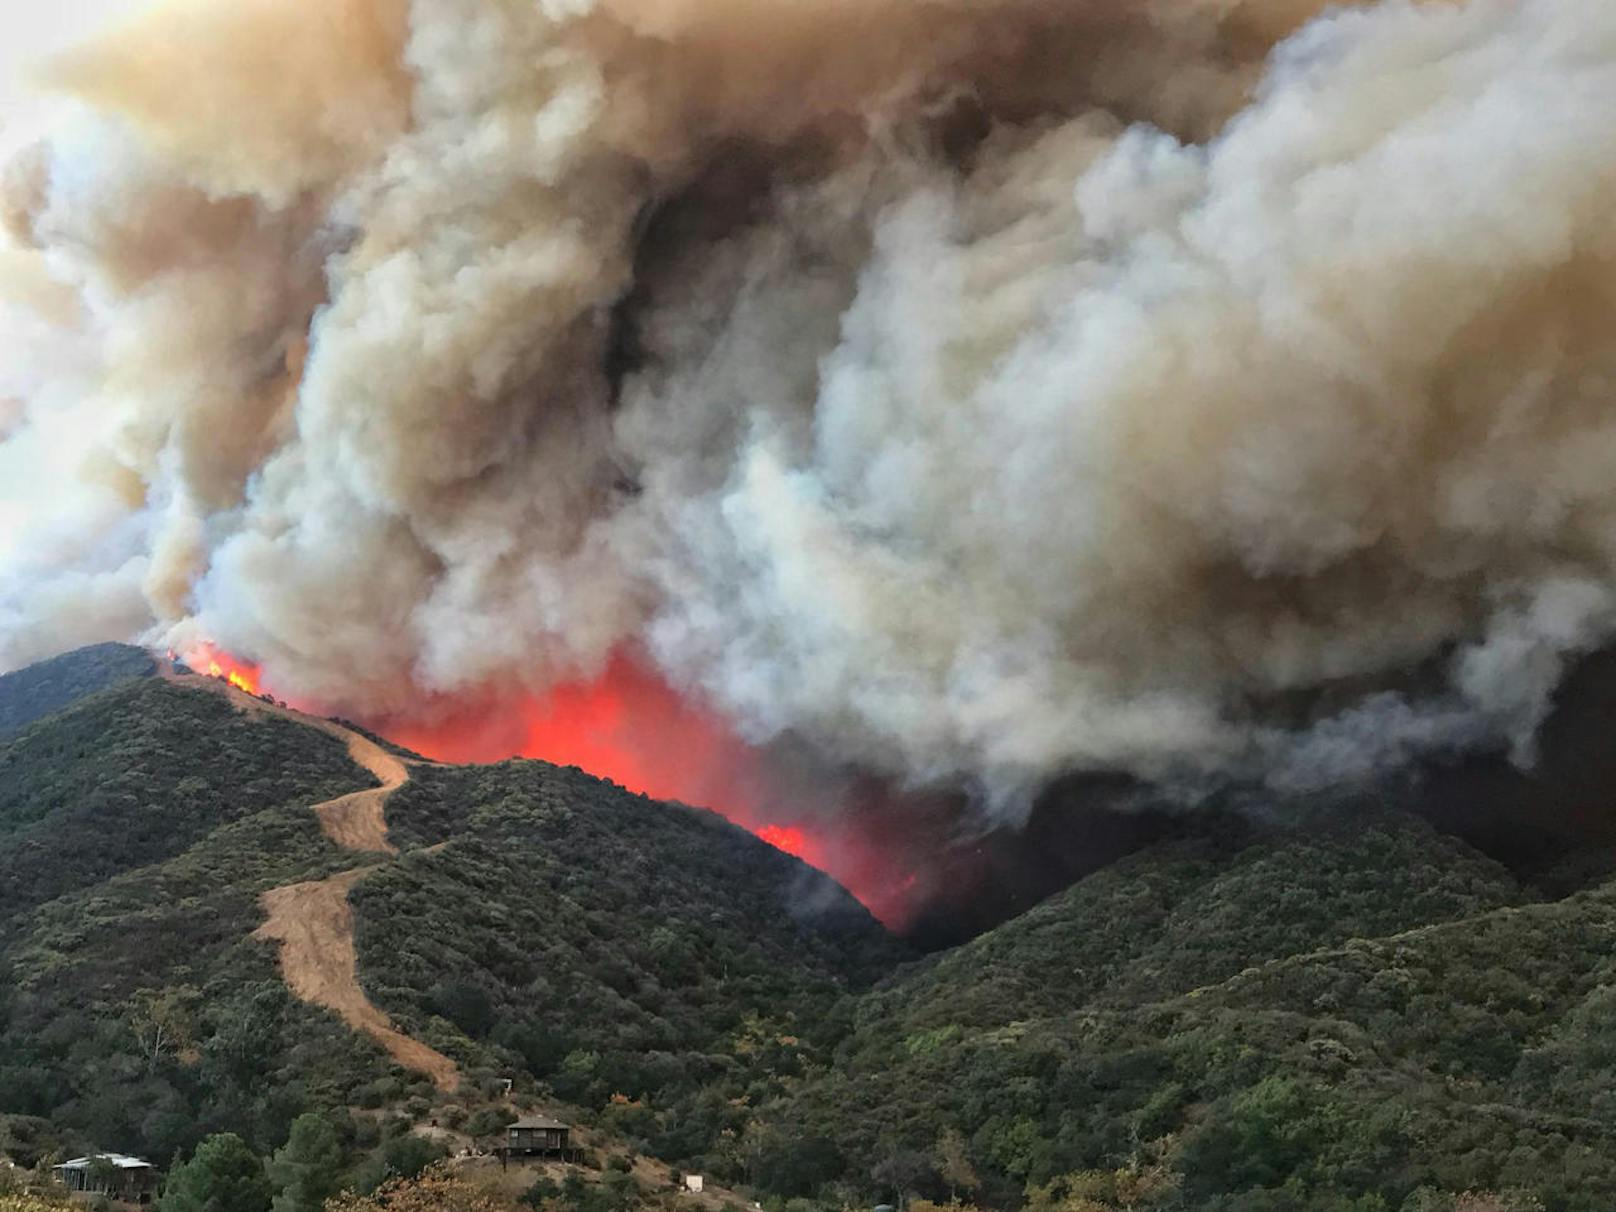 <b>4. Dezember 2017:</b> Bei verheerenden <b>Waldbränden in Kalifornien</b> wurden erneut mehr als 100.000 Hektar Land zerstört. Und die Gefahr ist noch nicht gebannt. Das sogenannte Thomas-Feuer nördlich von Los Angeles war zum viertgrößten Flächenbrand in Kalifornien seit 1932 angewachsen. Zehntausende Menschen mussten in Sicherheit gebracht werden. Mehr als 1.000 Gebäude wurden zerstört oder beschädigt. 

<b>Mehr Infos: </b> <a href="https://www.heute.at/welt/news/story/Santa-Barbara-evakuiert--Tausende-auf-der-Flucht-59004738" target="_blank">Santa Barbara evakuiert, Tausende auf der Flucht</a>